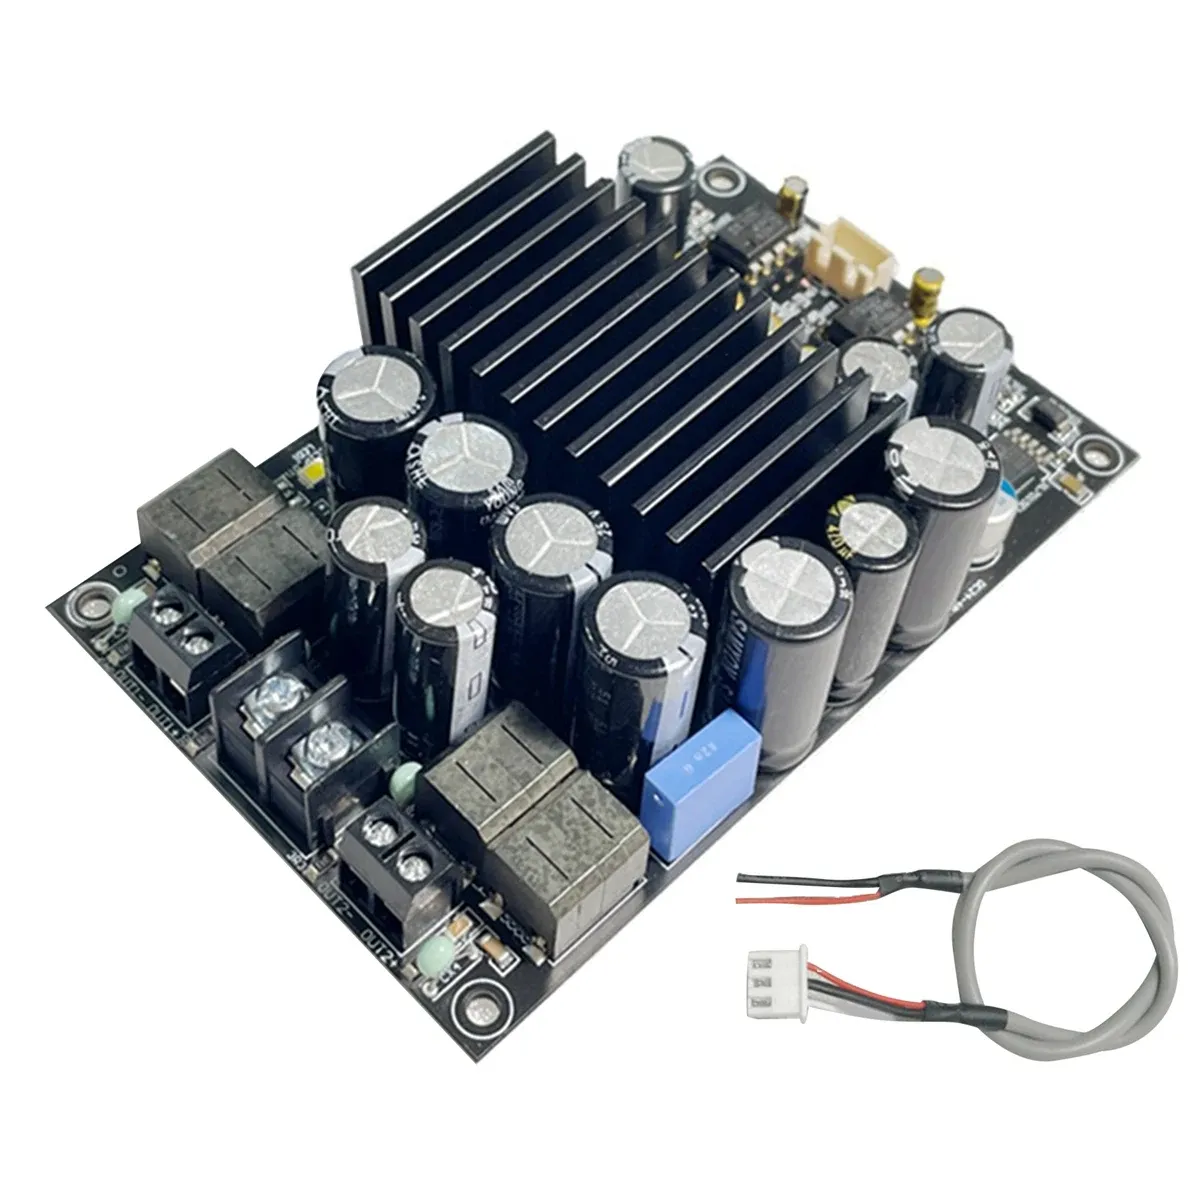 Amplificateurs TPA3255 Fièvre Niveau HIFI Digital Amplificateur Board 300W + 300W Highpower 2.0 Channel Stéréo Classe D Amplificateur Amplificateur